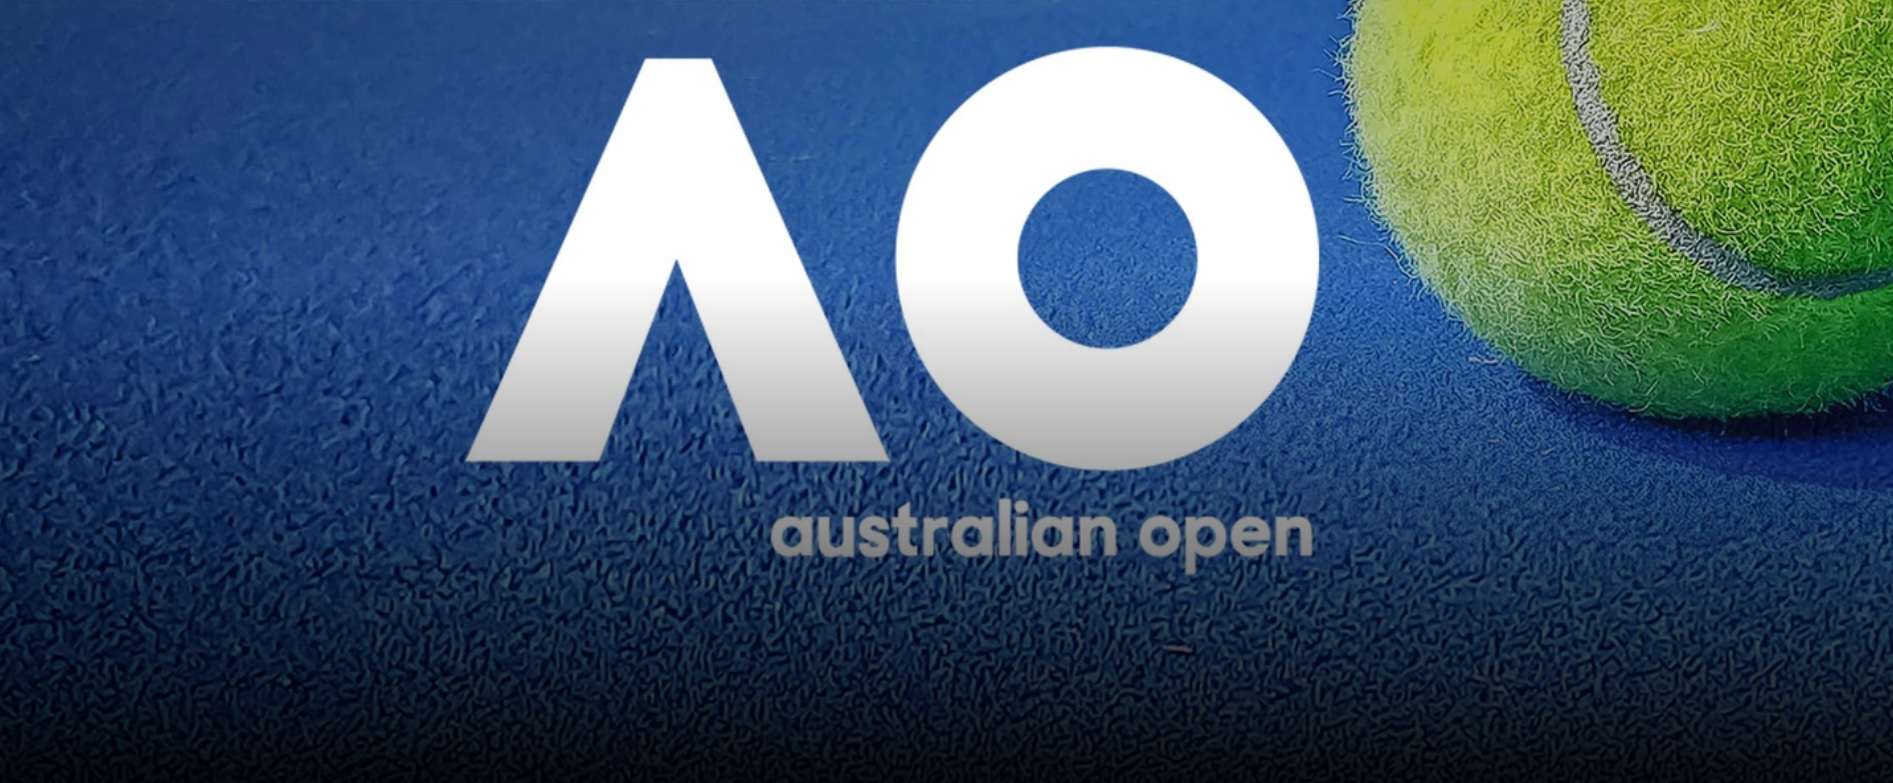 Come vedere Sinner agli Australian Open dall'estero in diretta streaming